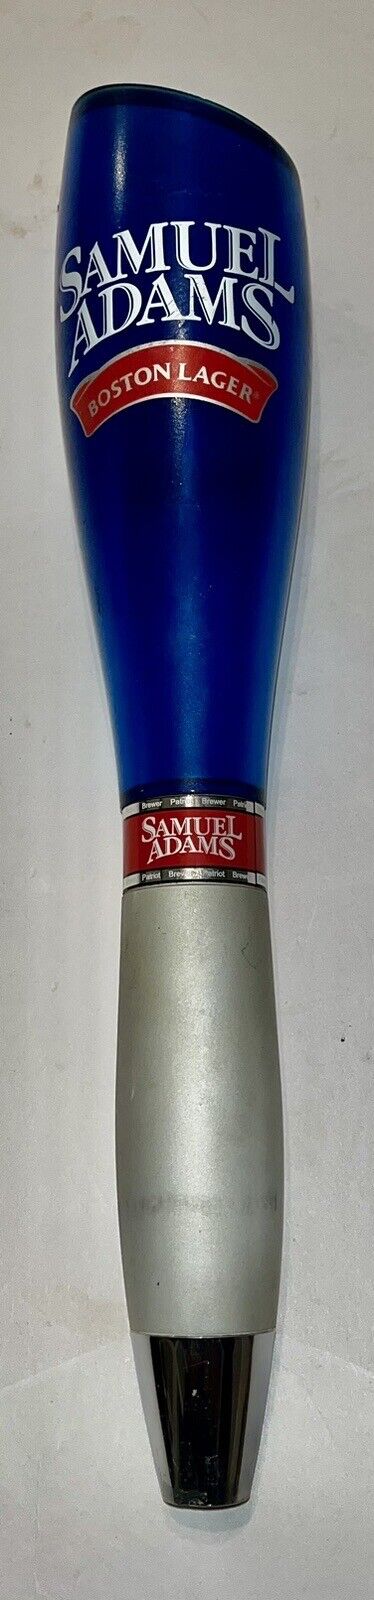 Samuel Sam Adams  Boston Lager  Ale Tap Handle Beer